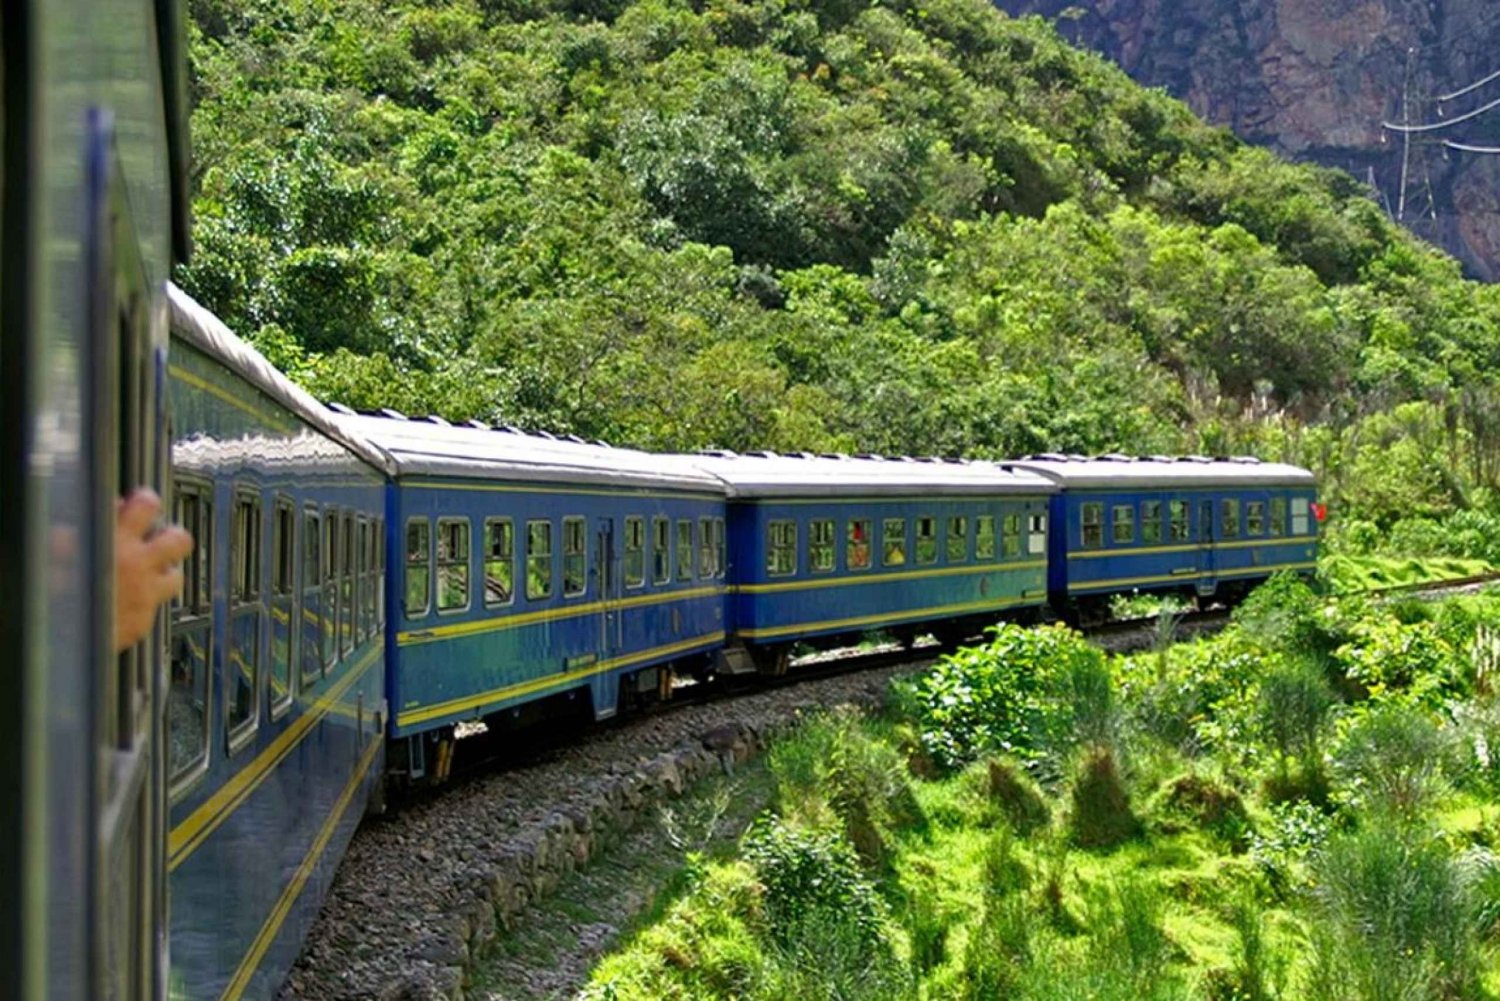 Tour della Rainbow Mountain e tour di Machu Picchu in treno